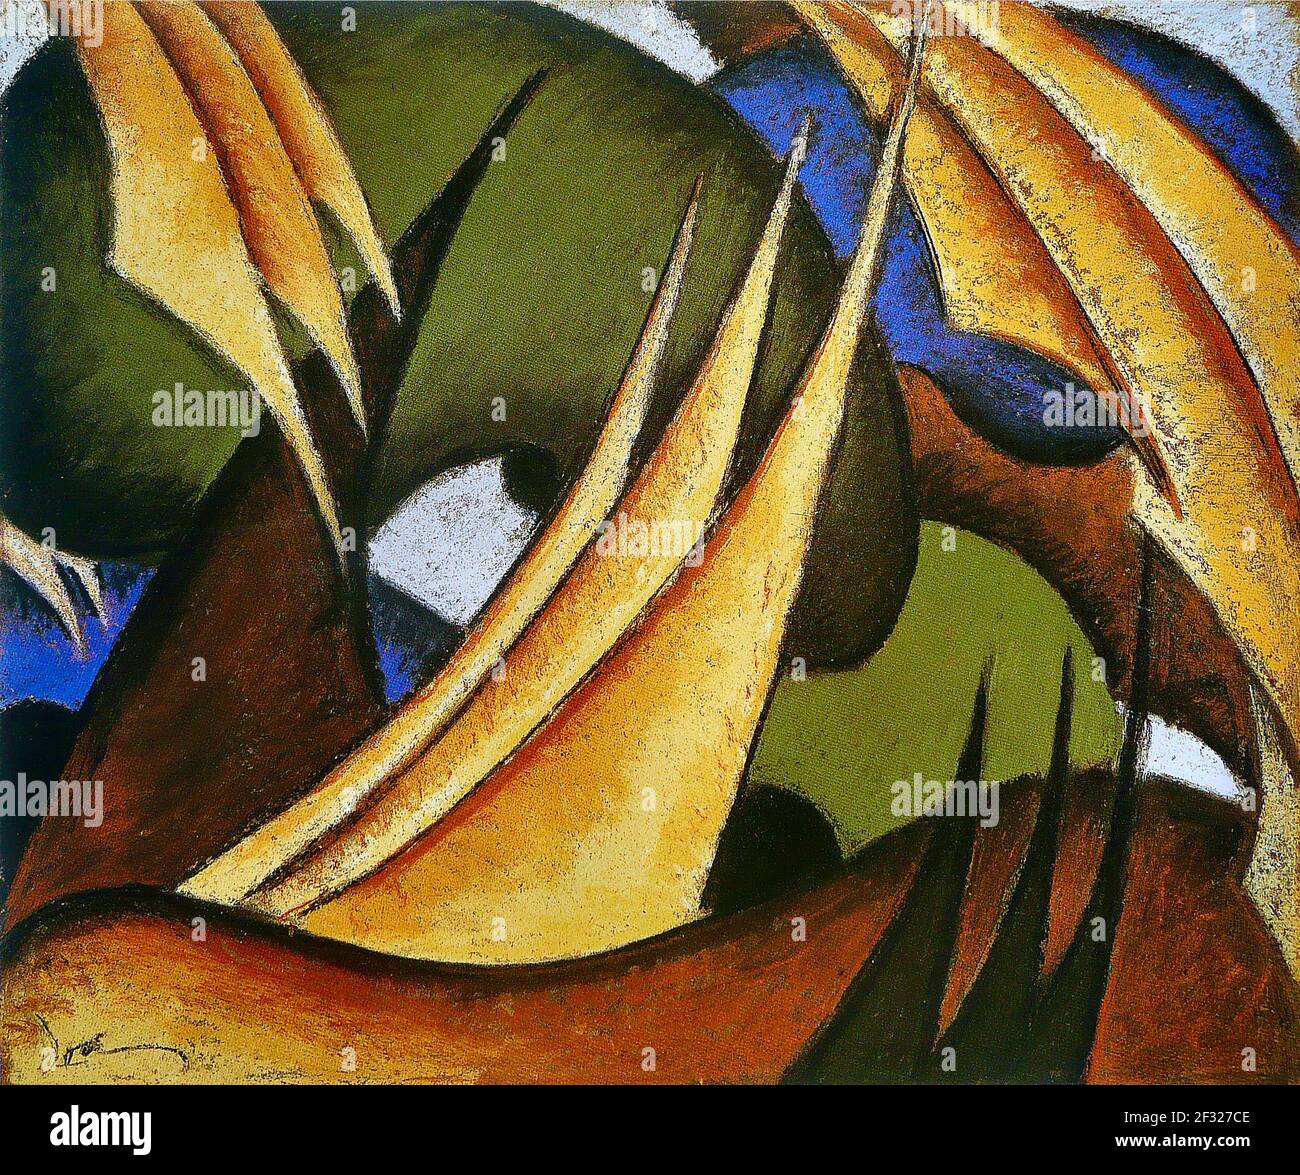 Voiles d'Arthur Dove - voiles triangulaires des bateaux à voile sur une mer en mouvement vivant - œuvres abstraites américaines vintage. Banque D'Images